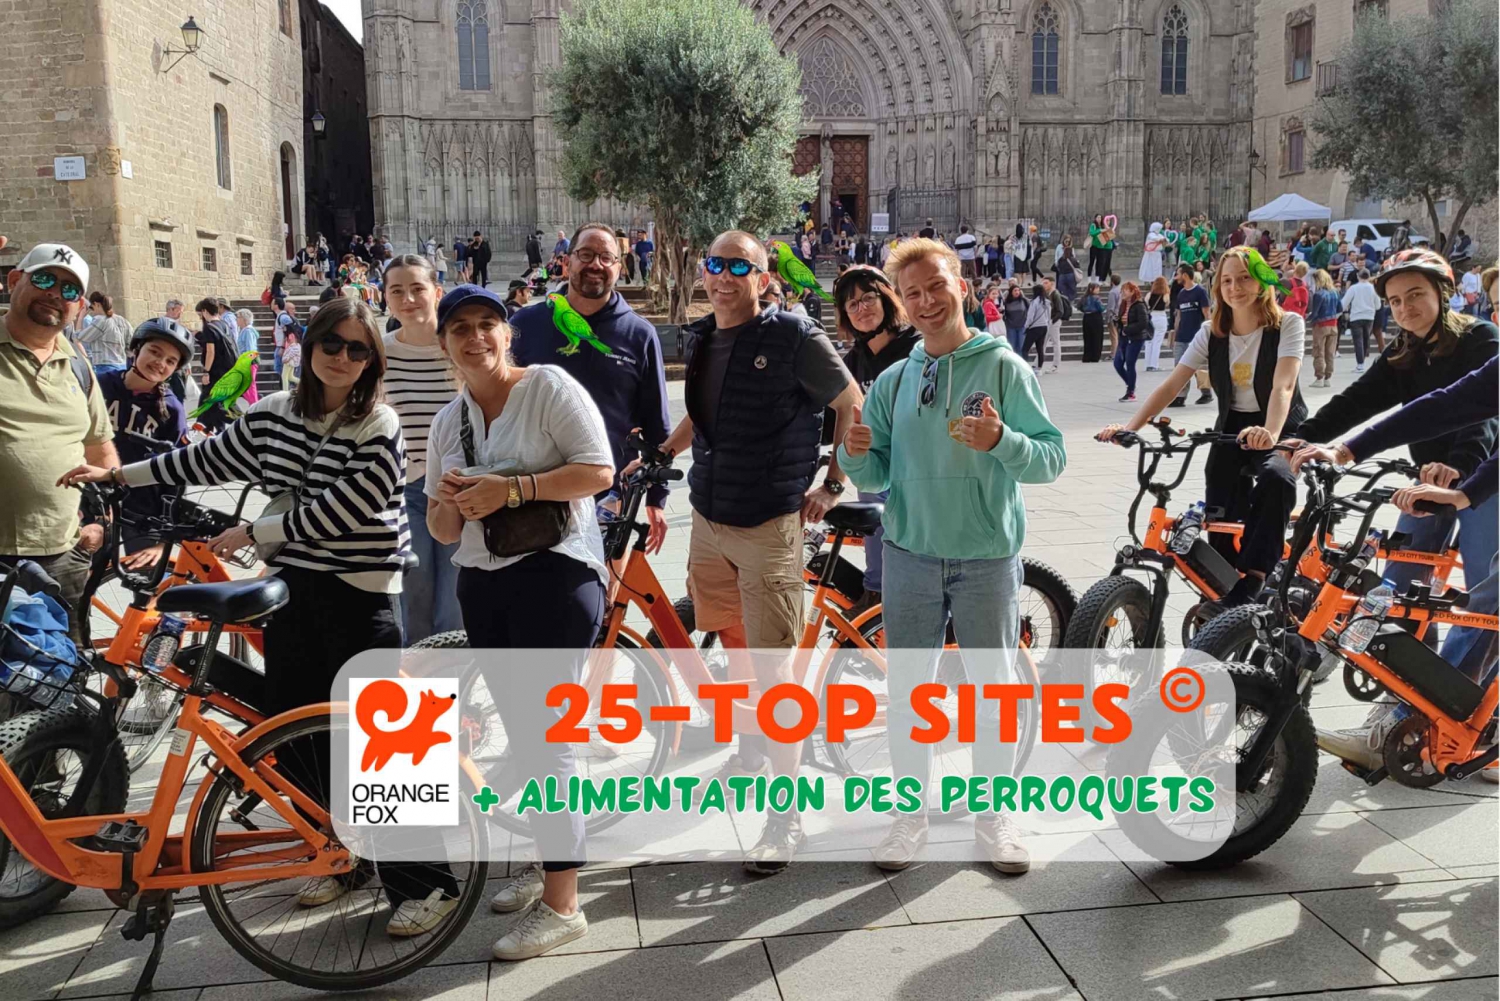 Tour di Barcellona💕 con guida francese 25-тop siti, bici/ebike